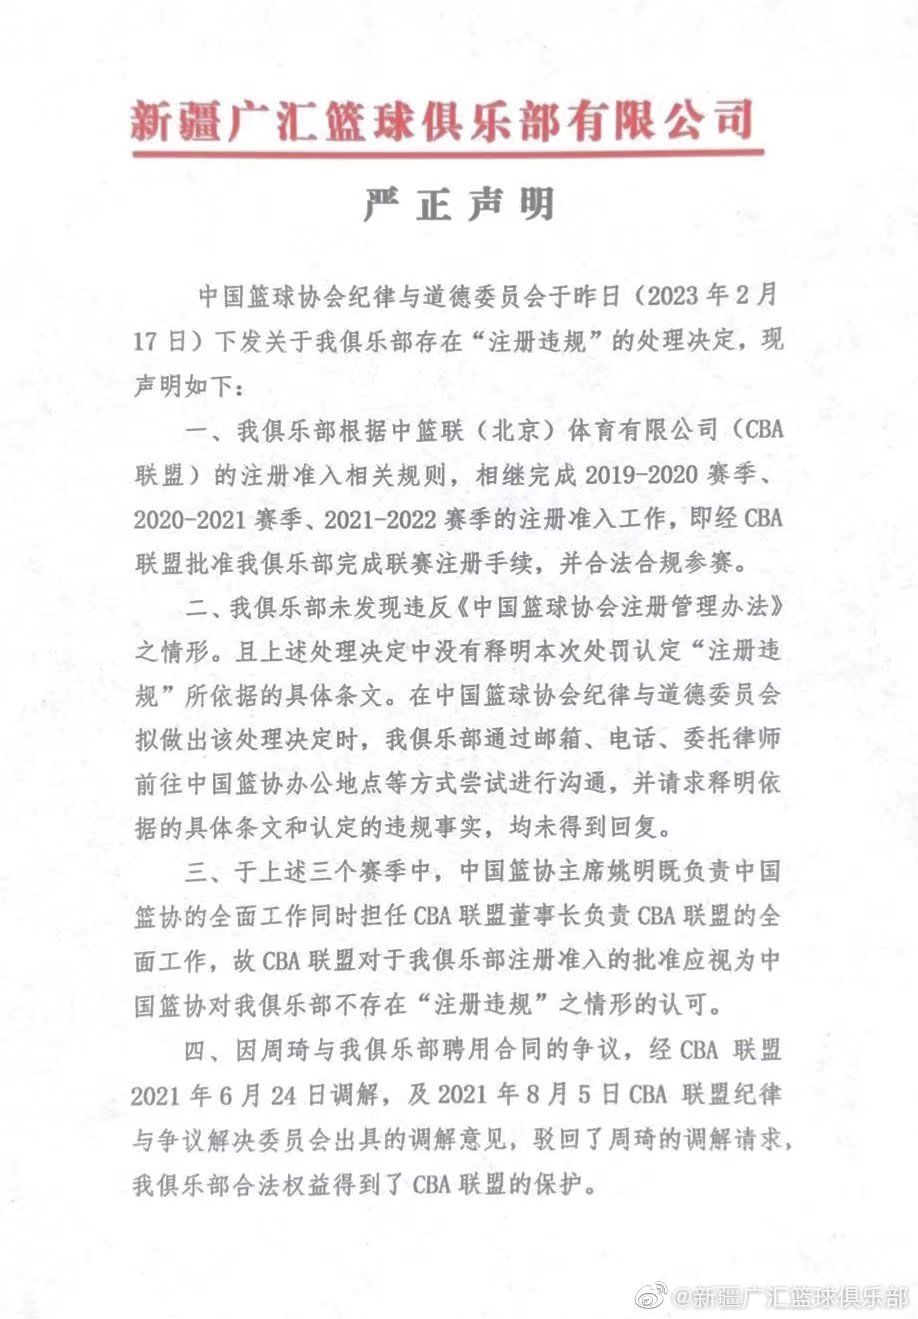 新疆男篮回应中国篮协处罚决定：要求公平公正对待 撤回本次处理决定